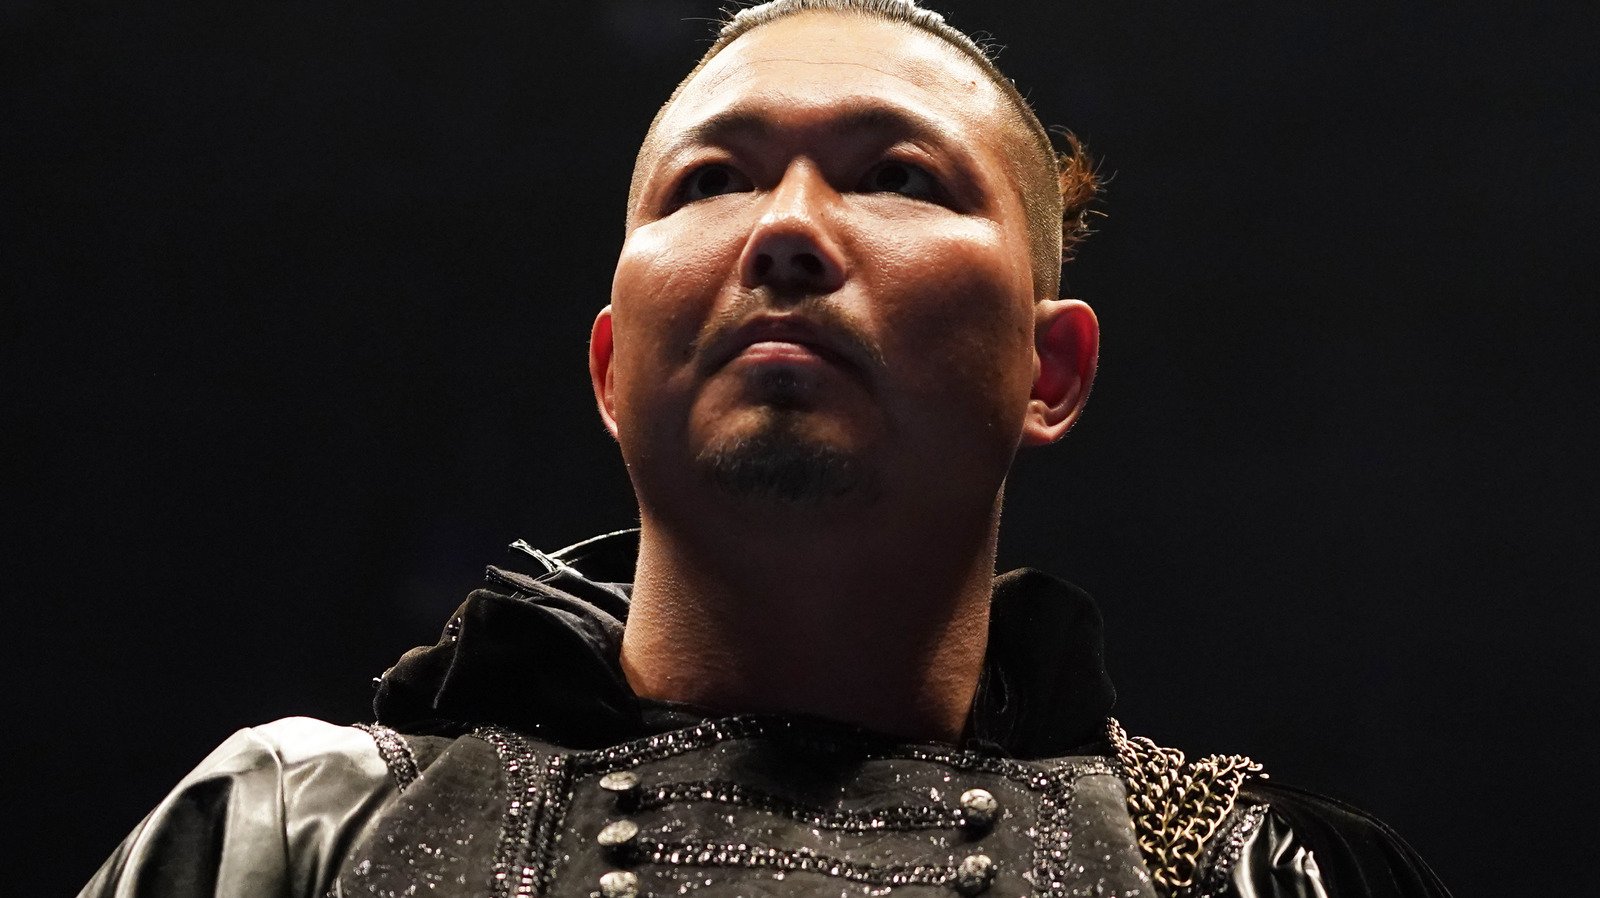 Jake Lee gana el campeonato de peso pesado de GHC de manos de Kaito Kiyomiya en Pro Wrestling NOAH